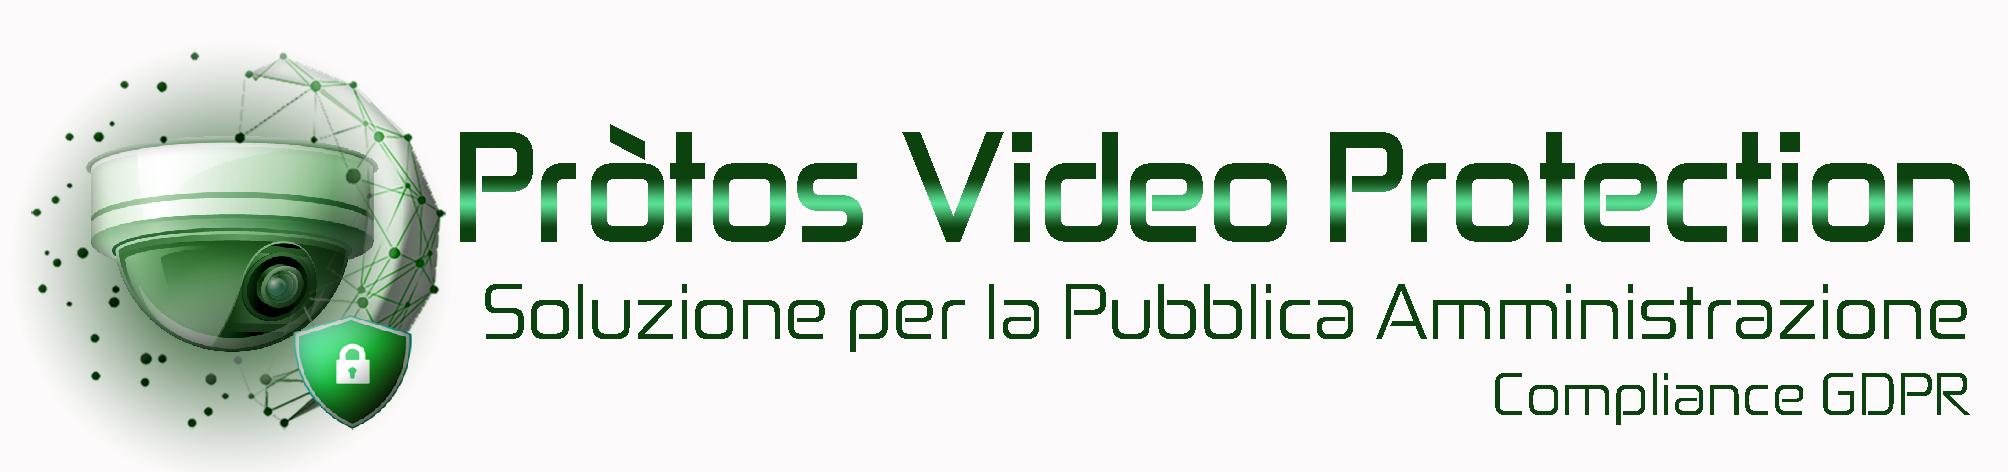 Logo Protos Video Protection 1jpg